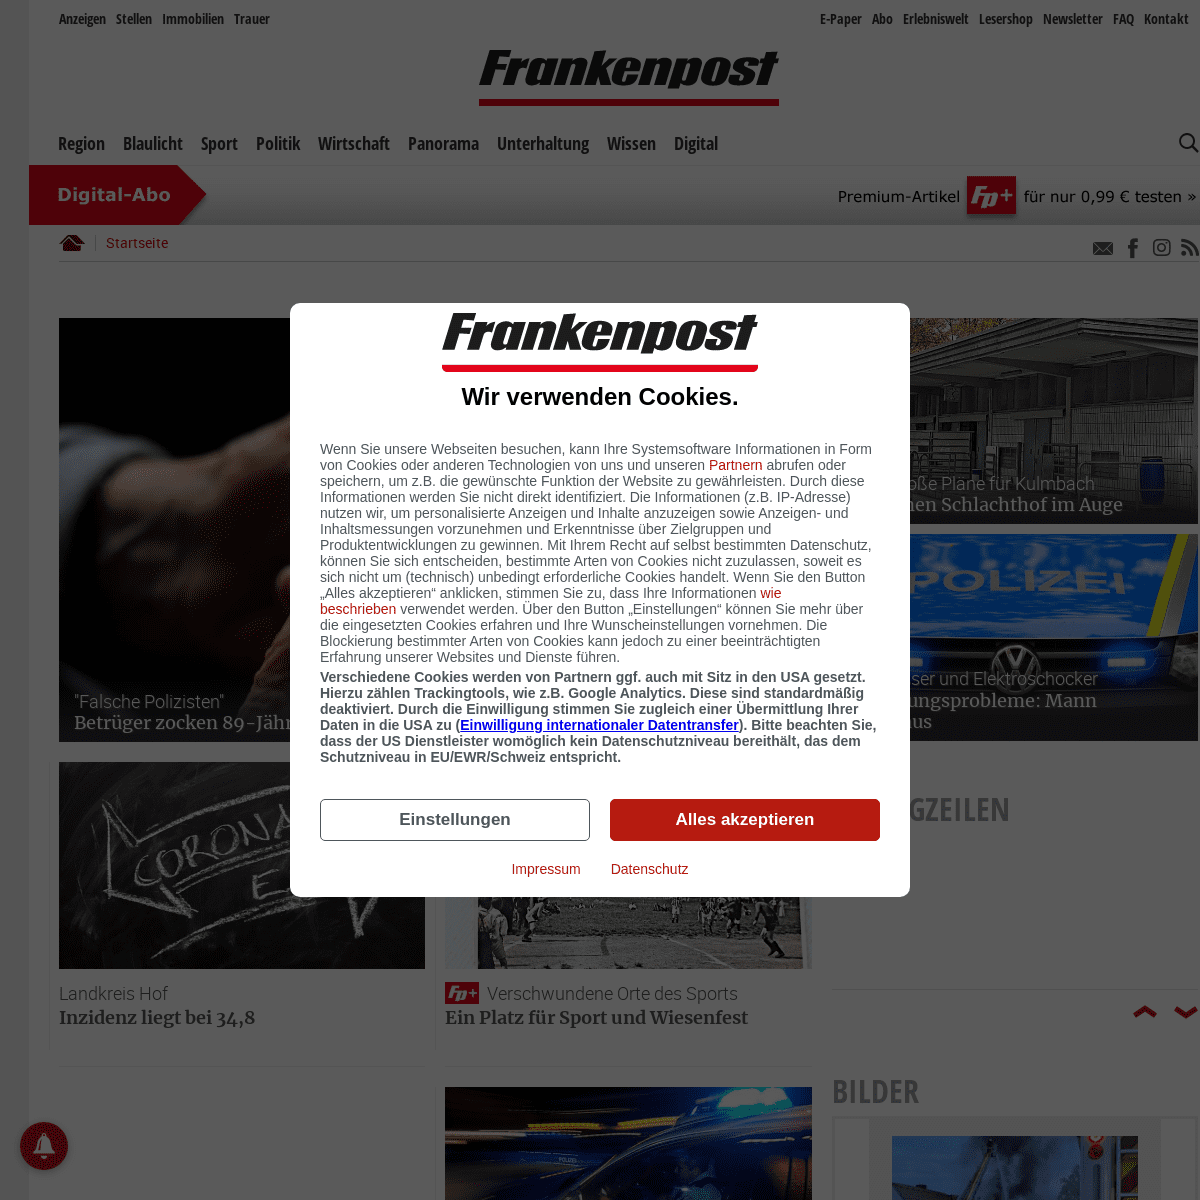 A complete backup of https://frankenpost.de